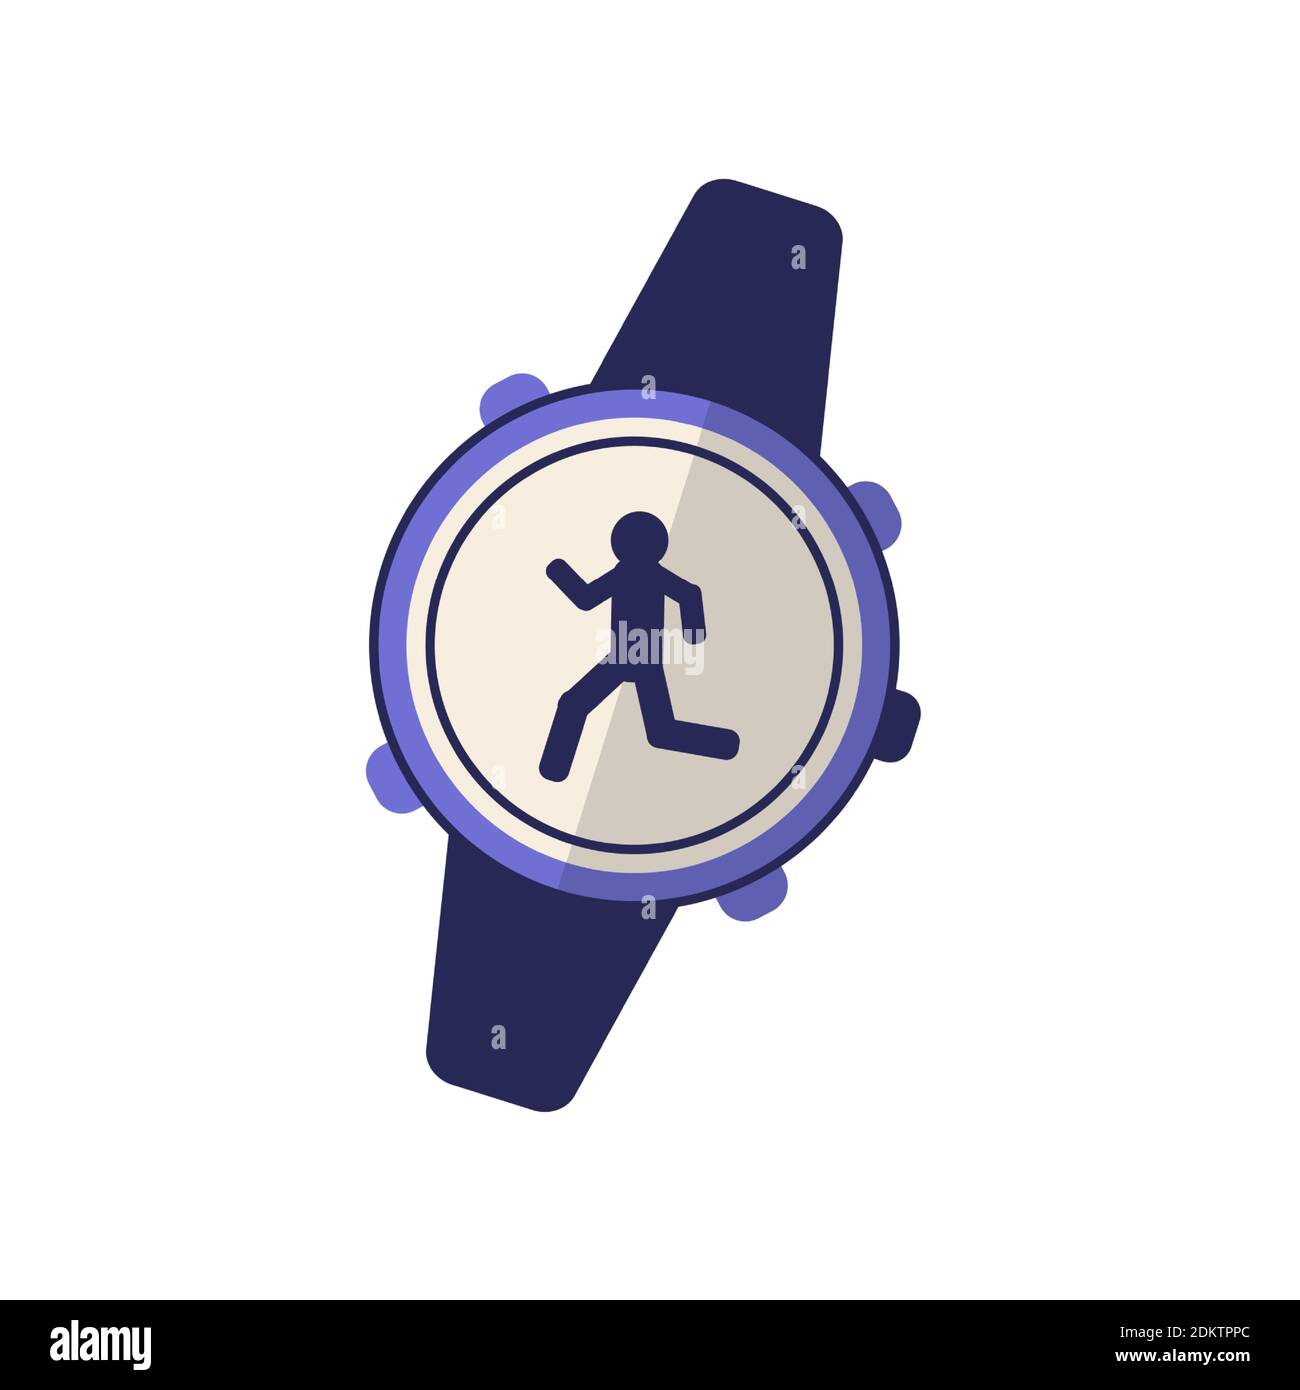 Flache Laufuhr. Farbe einfaches Element aus Wearable Devices Sammlung.  Creative Running Watch Symbol für Web-Design, Vorlagen, Infografiken  Stock-Vektorgrafik - Alamy